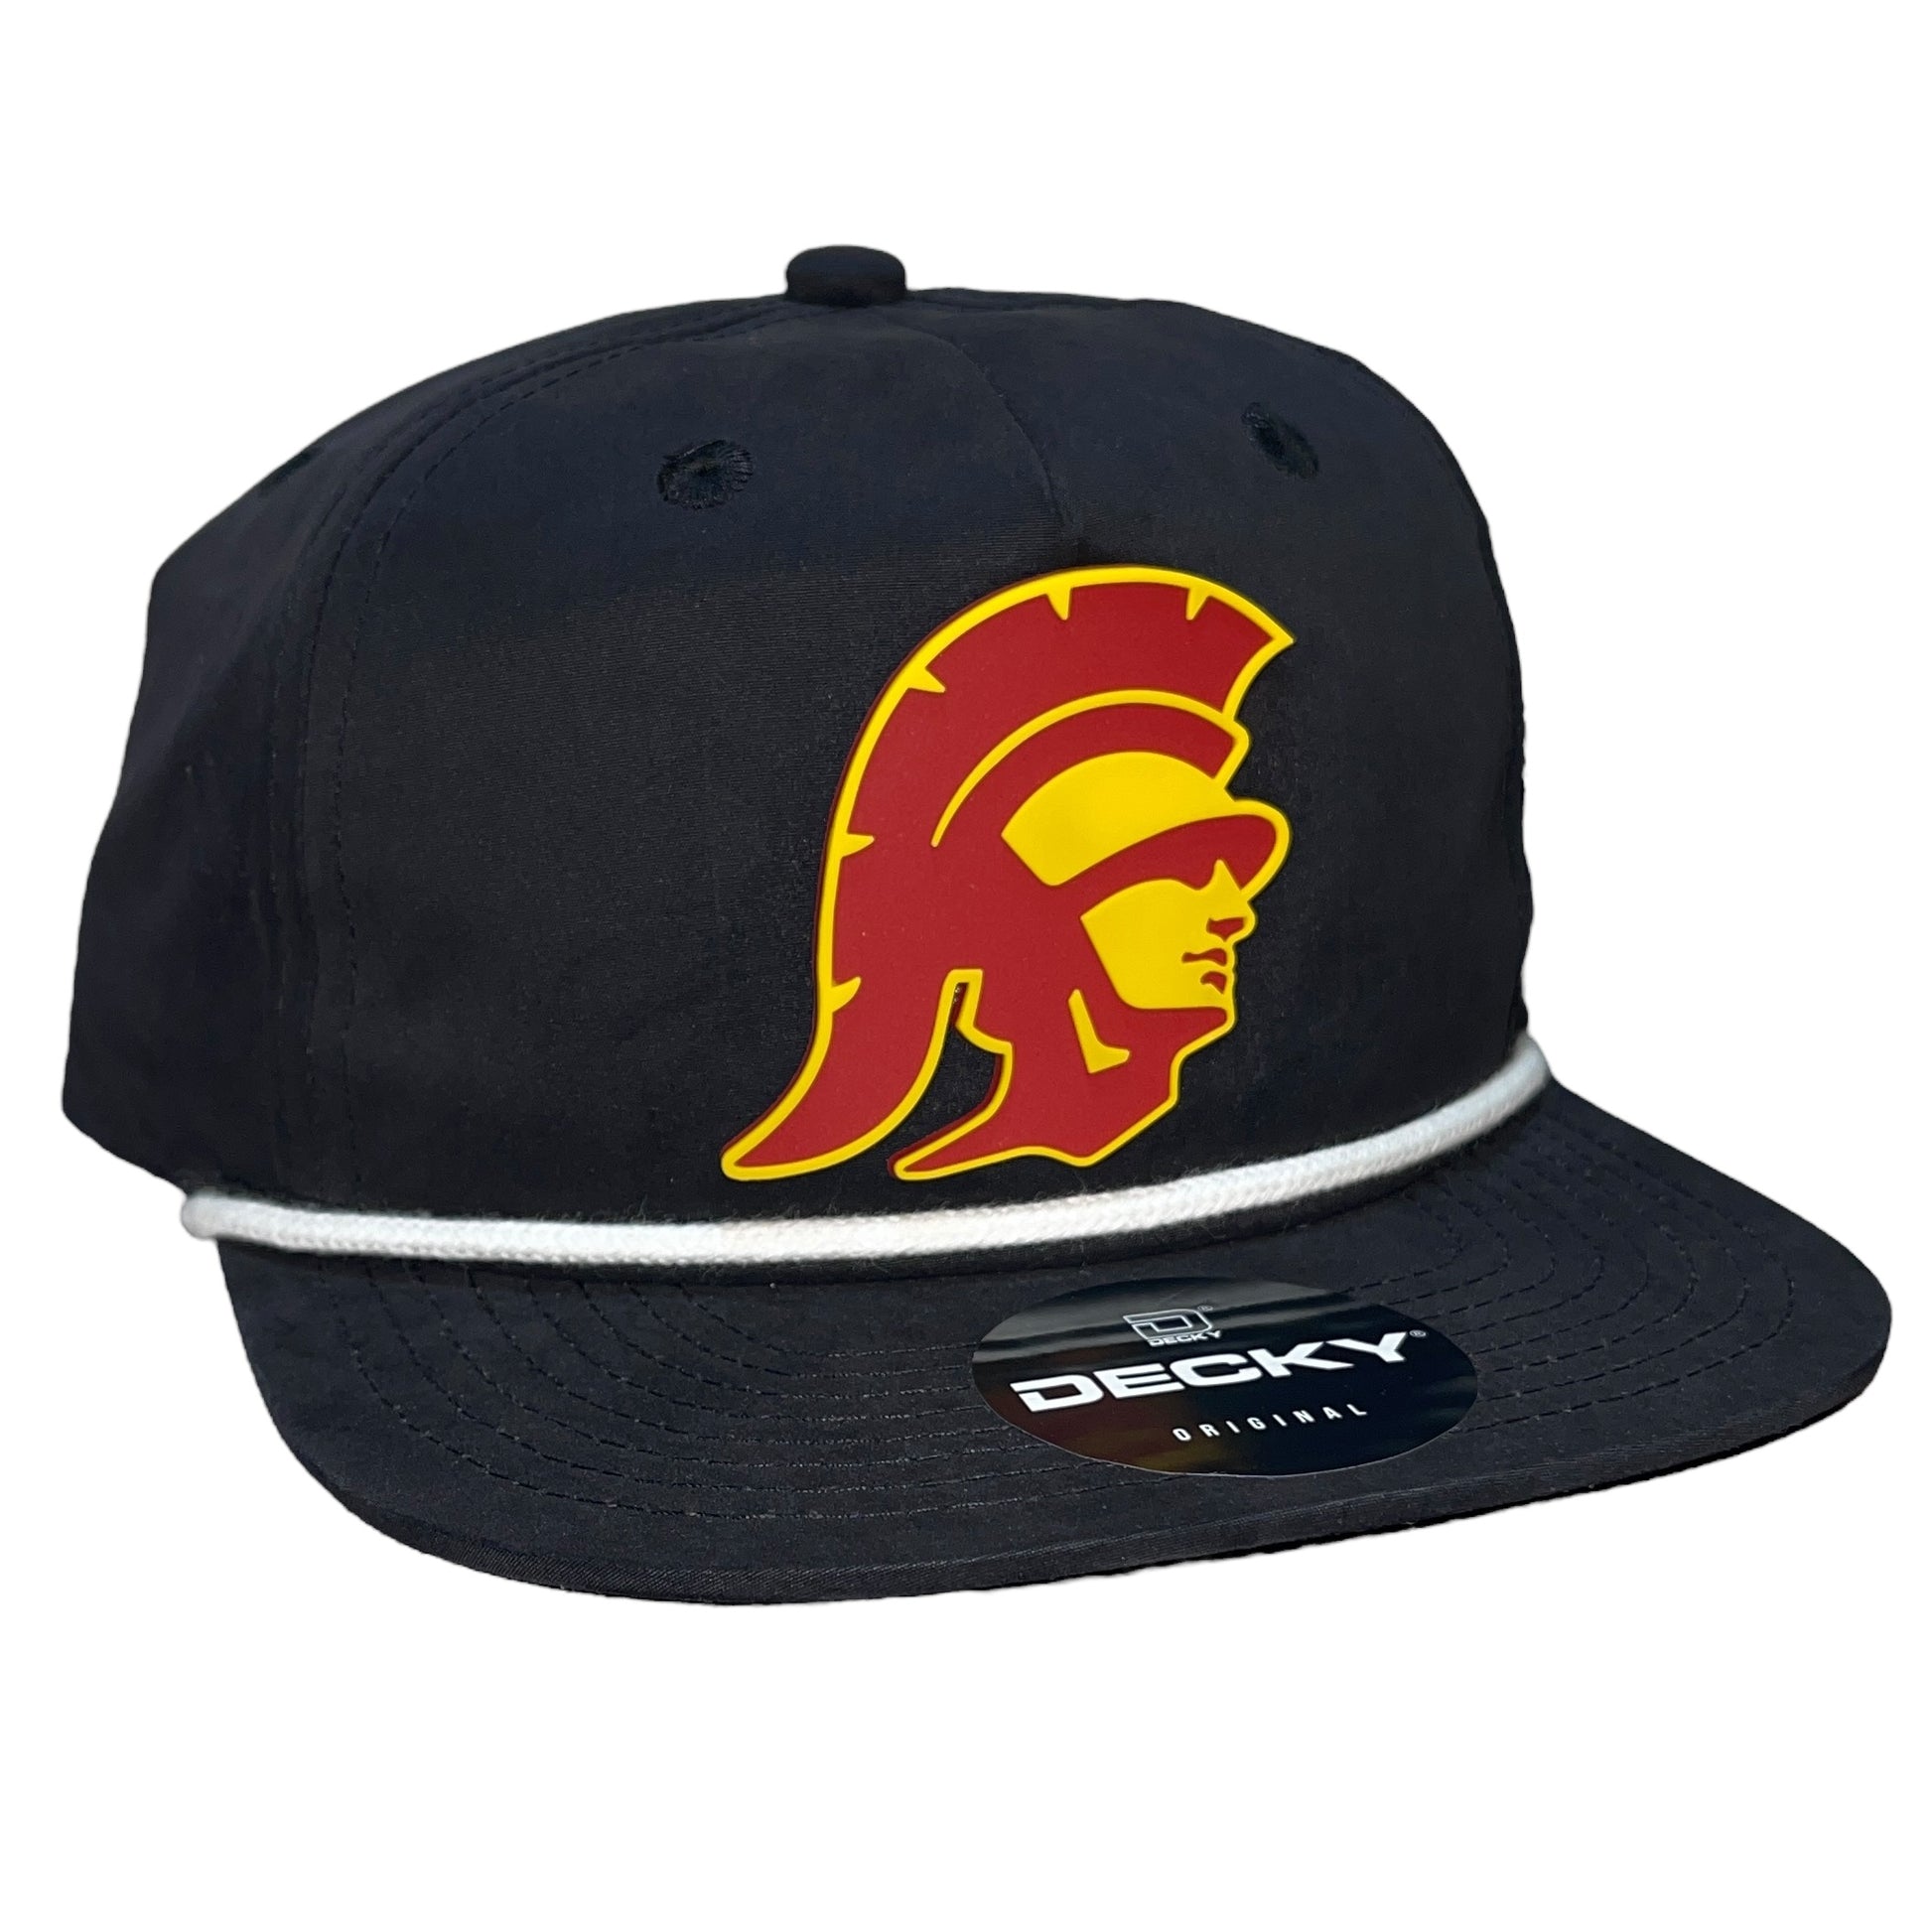 USC Trojans 3D Classic Rope Hat- Black/ White - Ten Gallon Hat Co.